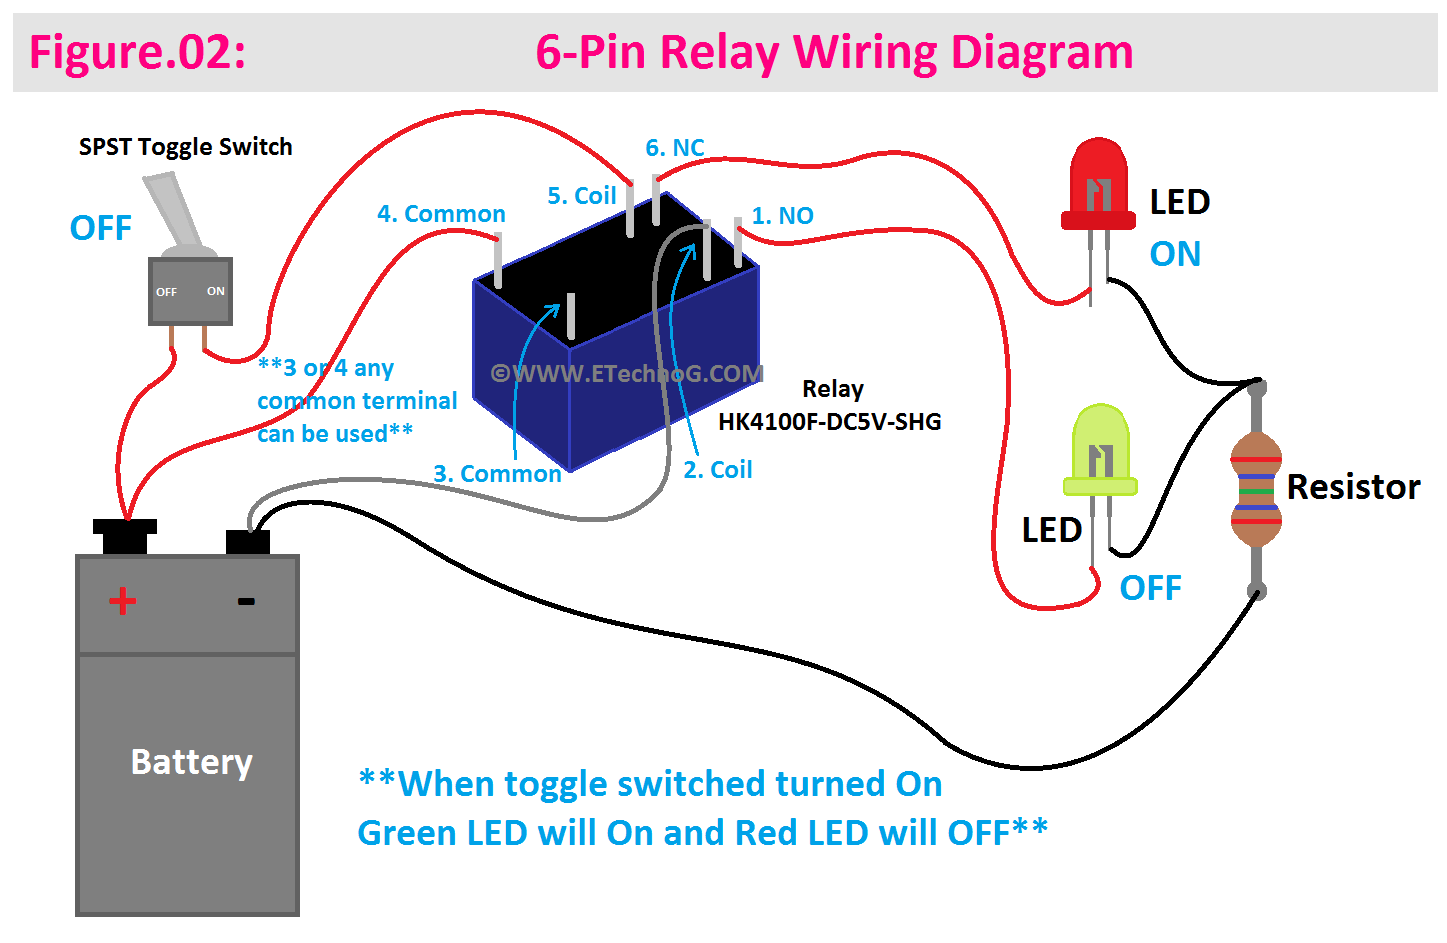 6-Pin Relay Wiring Diagram